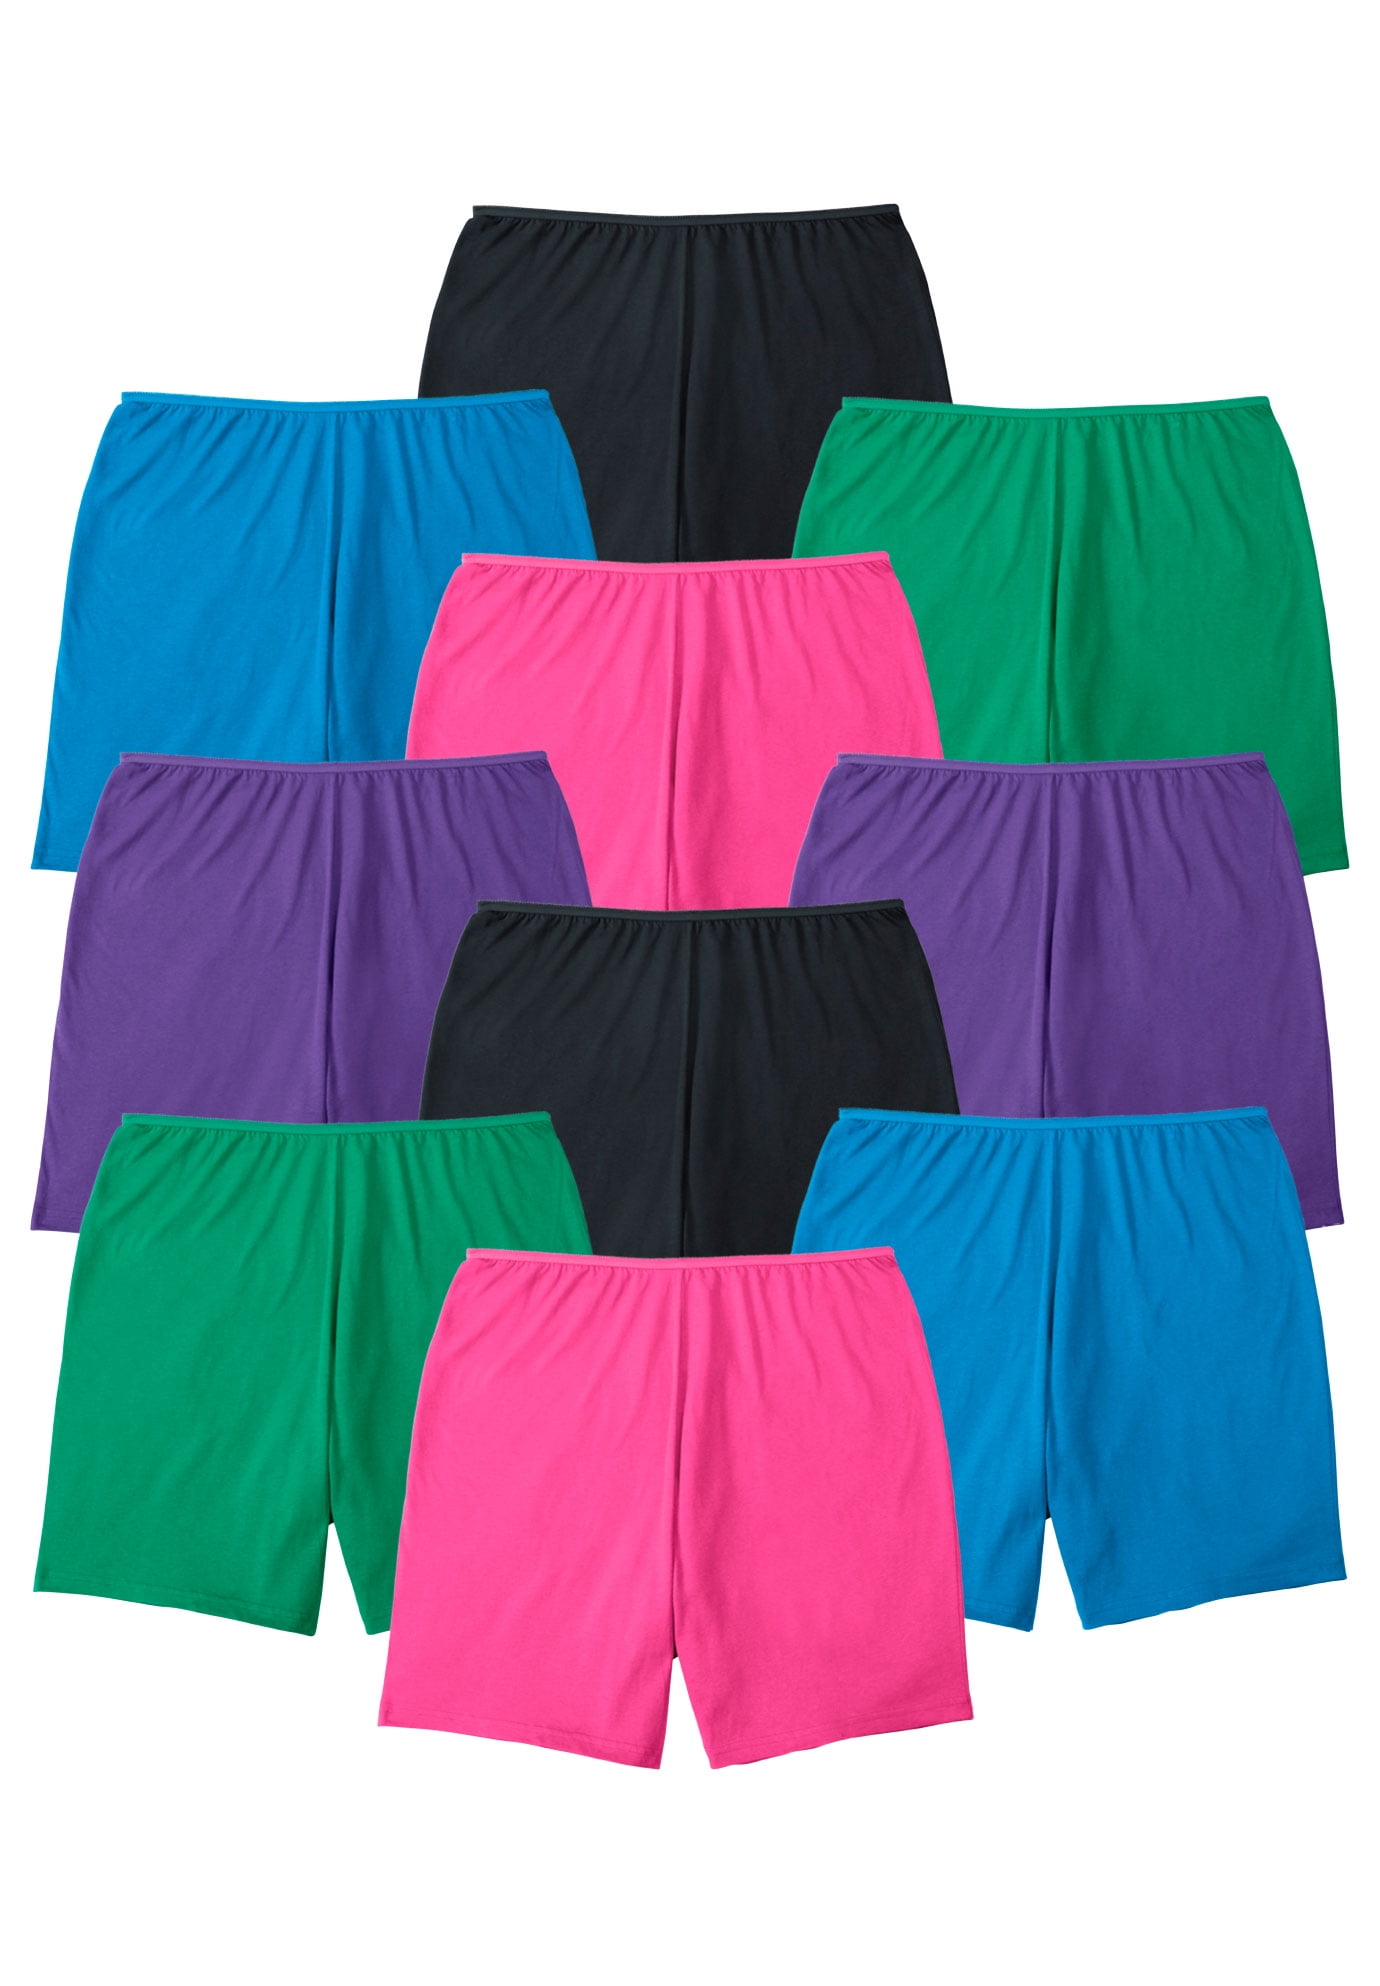 Comfort Choice Women's Plus Size Cotton Boxer 10-Pack Underwear